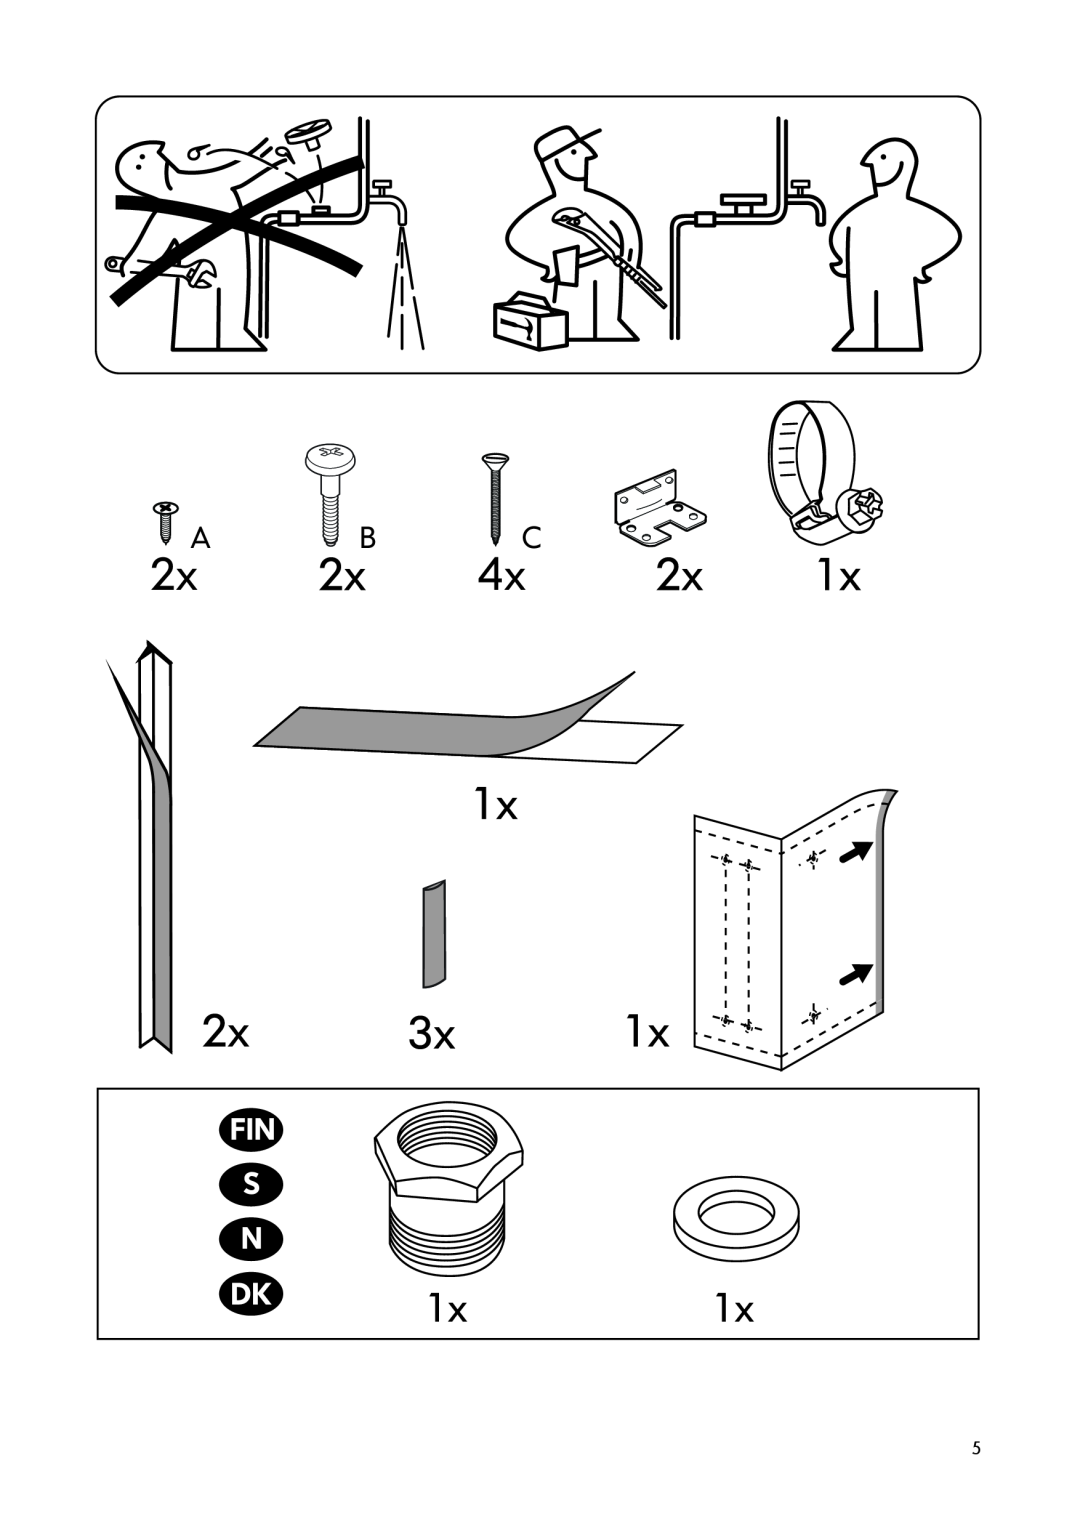 IKEA DW60 manual 2xA B 4xC, Fin S N 